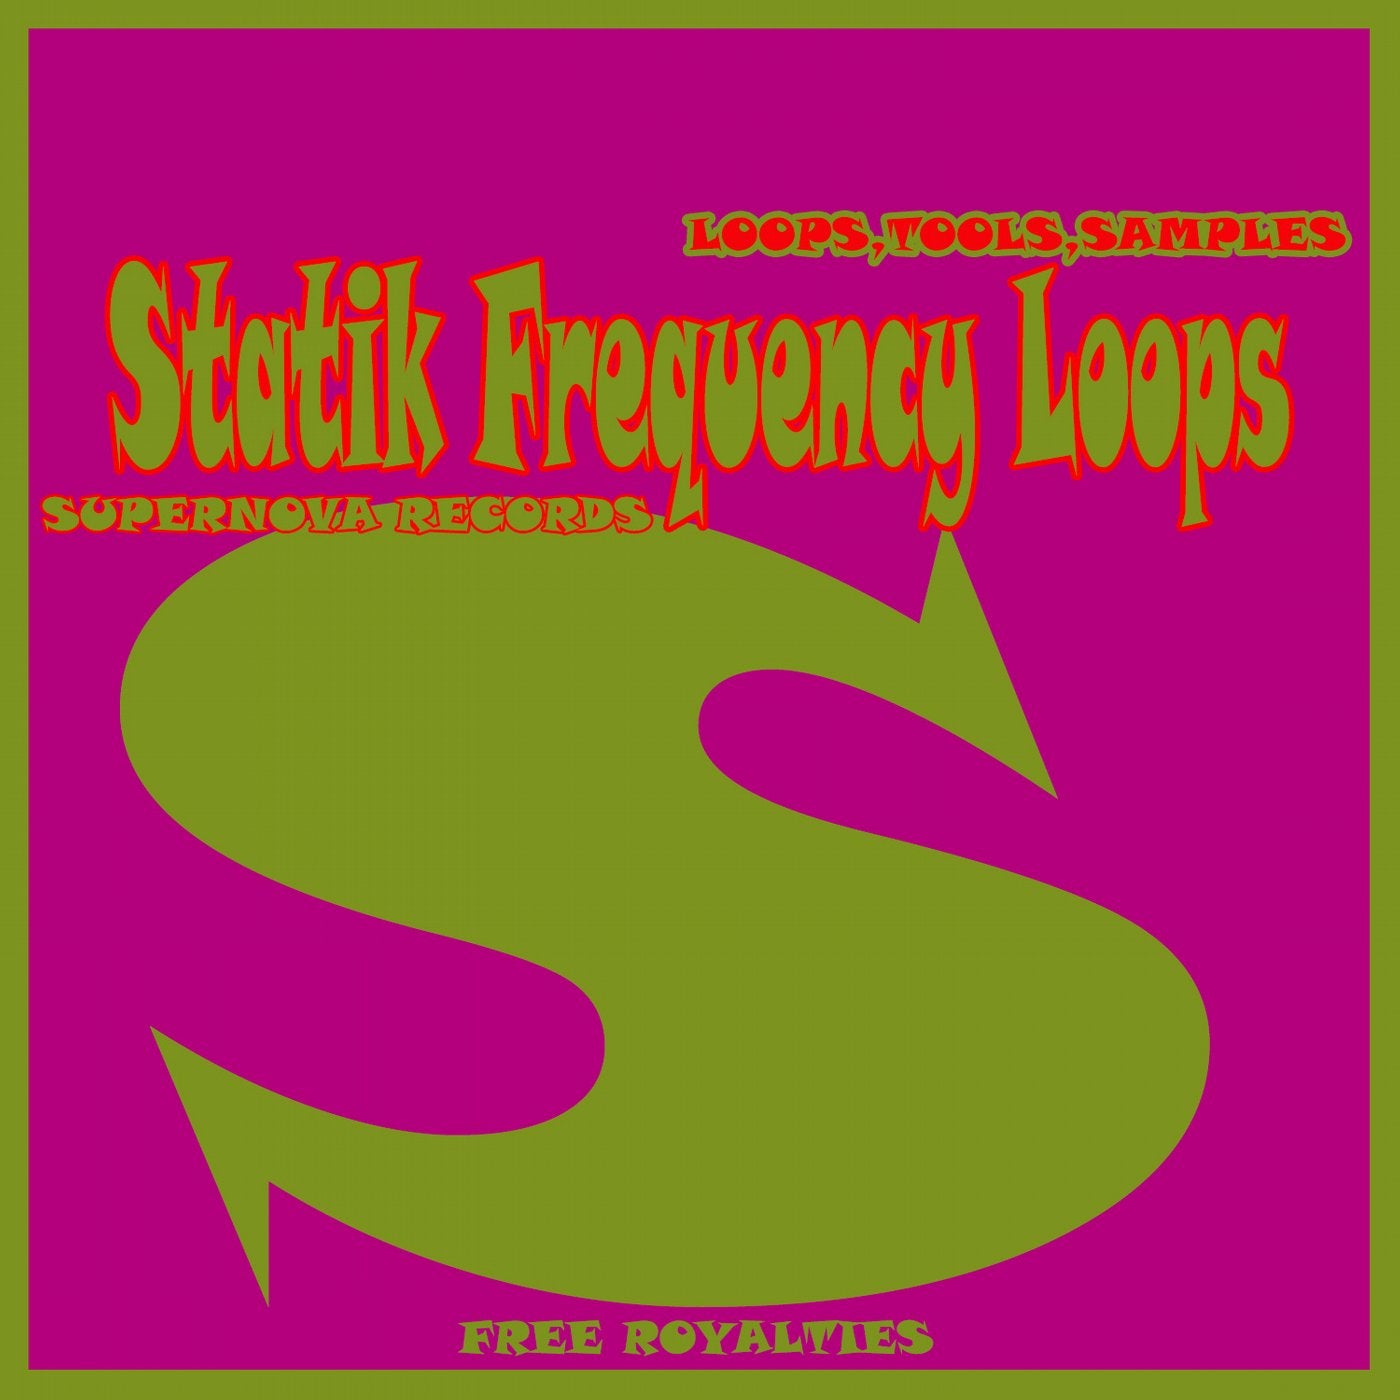 Statik Frequency Loops